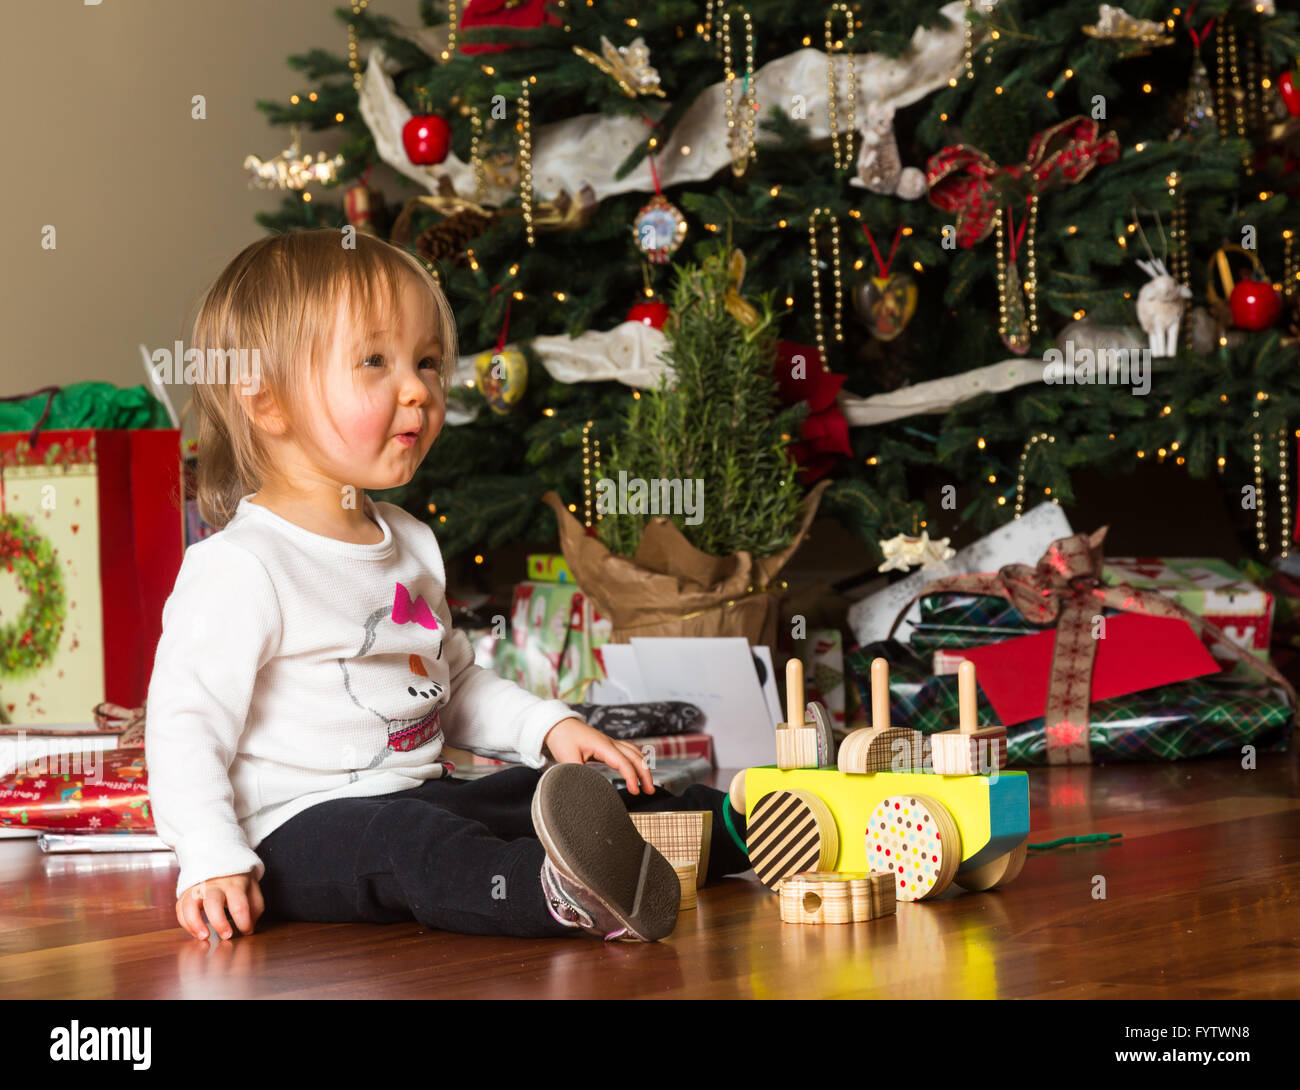 Junge kaukasische Mädchen öffnen präsentiert sich auf Weihnachten Stockfoto